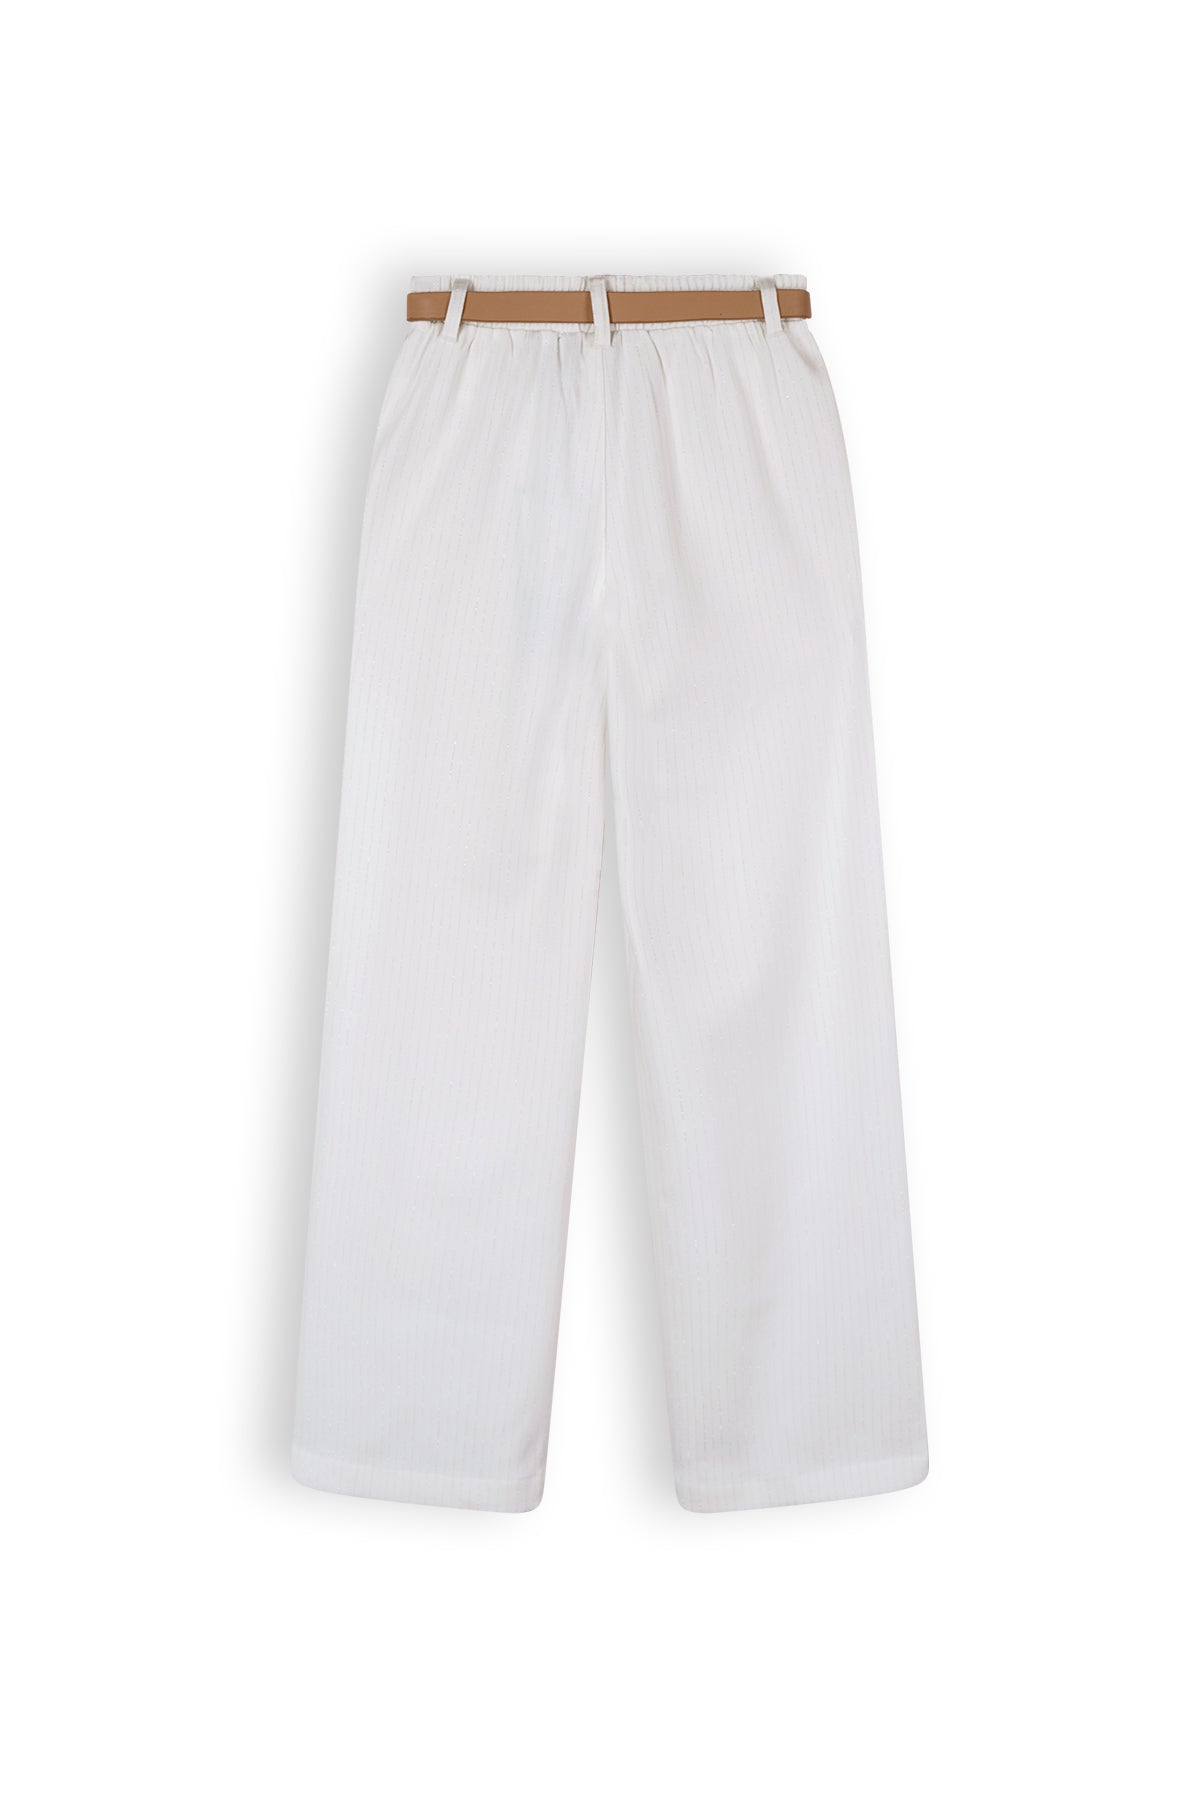 Meisjes Sayla Girls Wide Leg Pants Lurex Pinstripe White + Belt van NoNo in de kleur Snow White in maat 134-140.